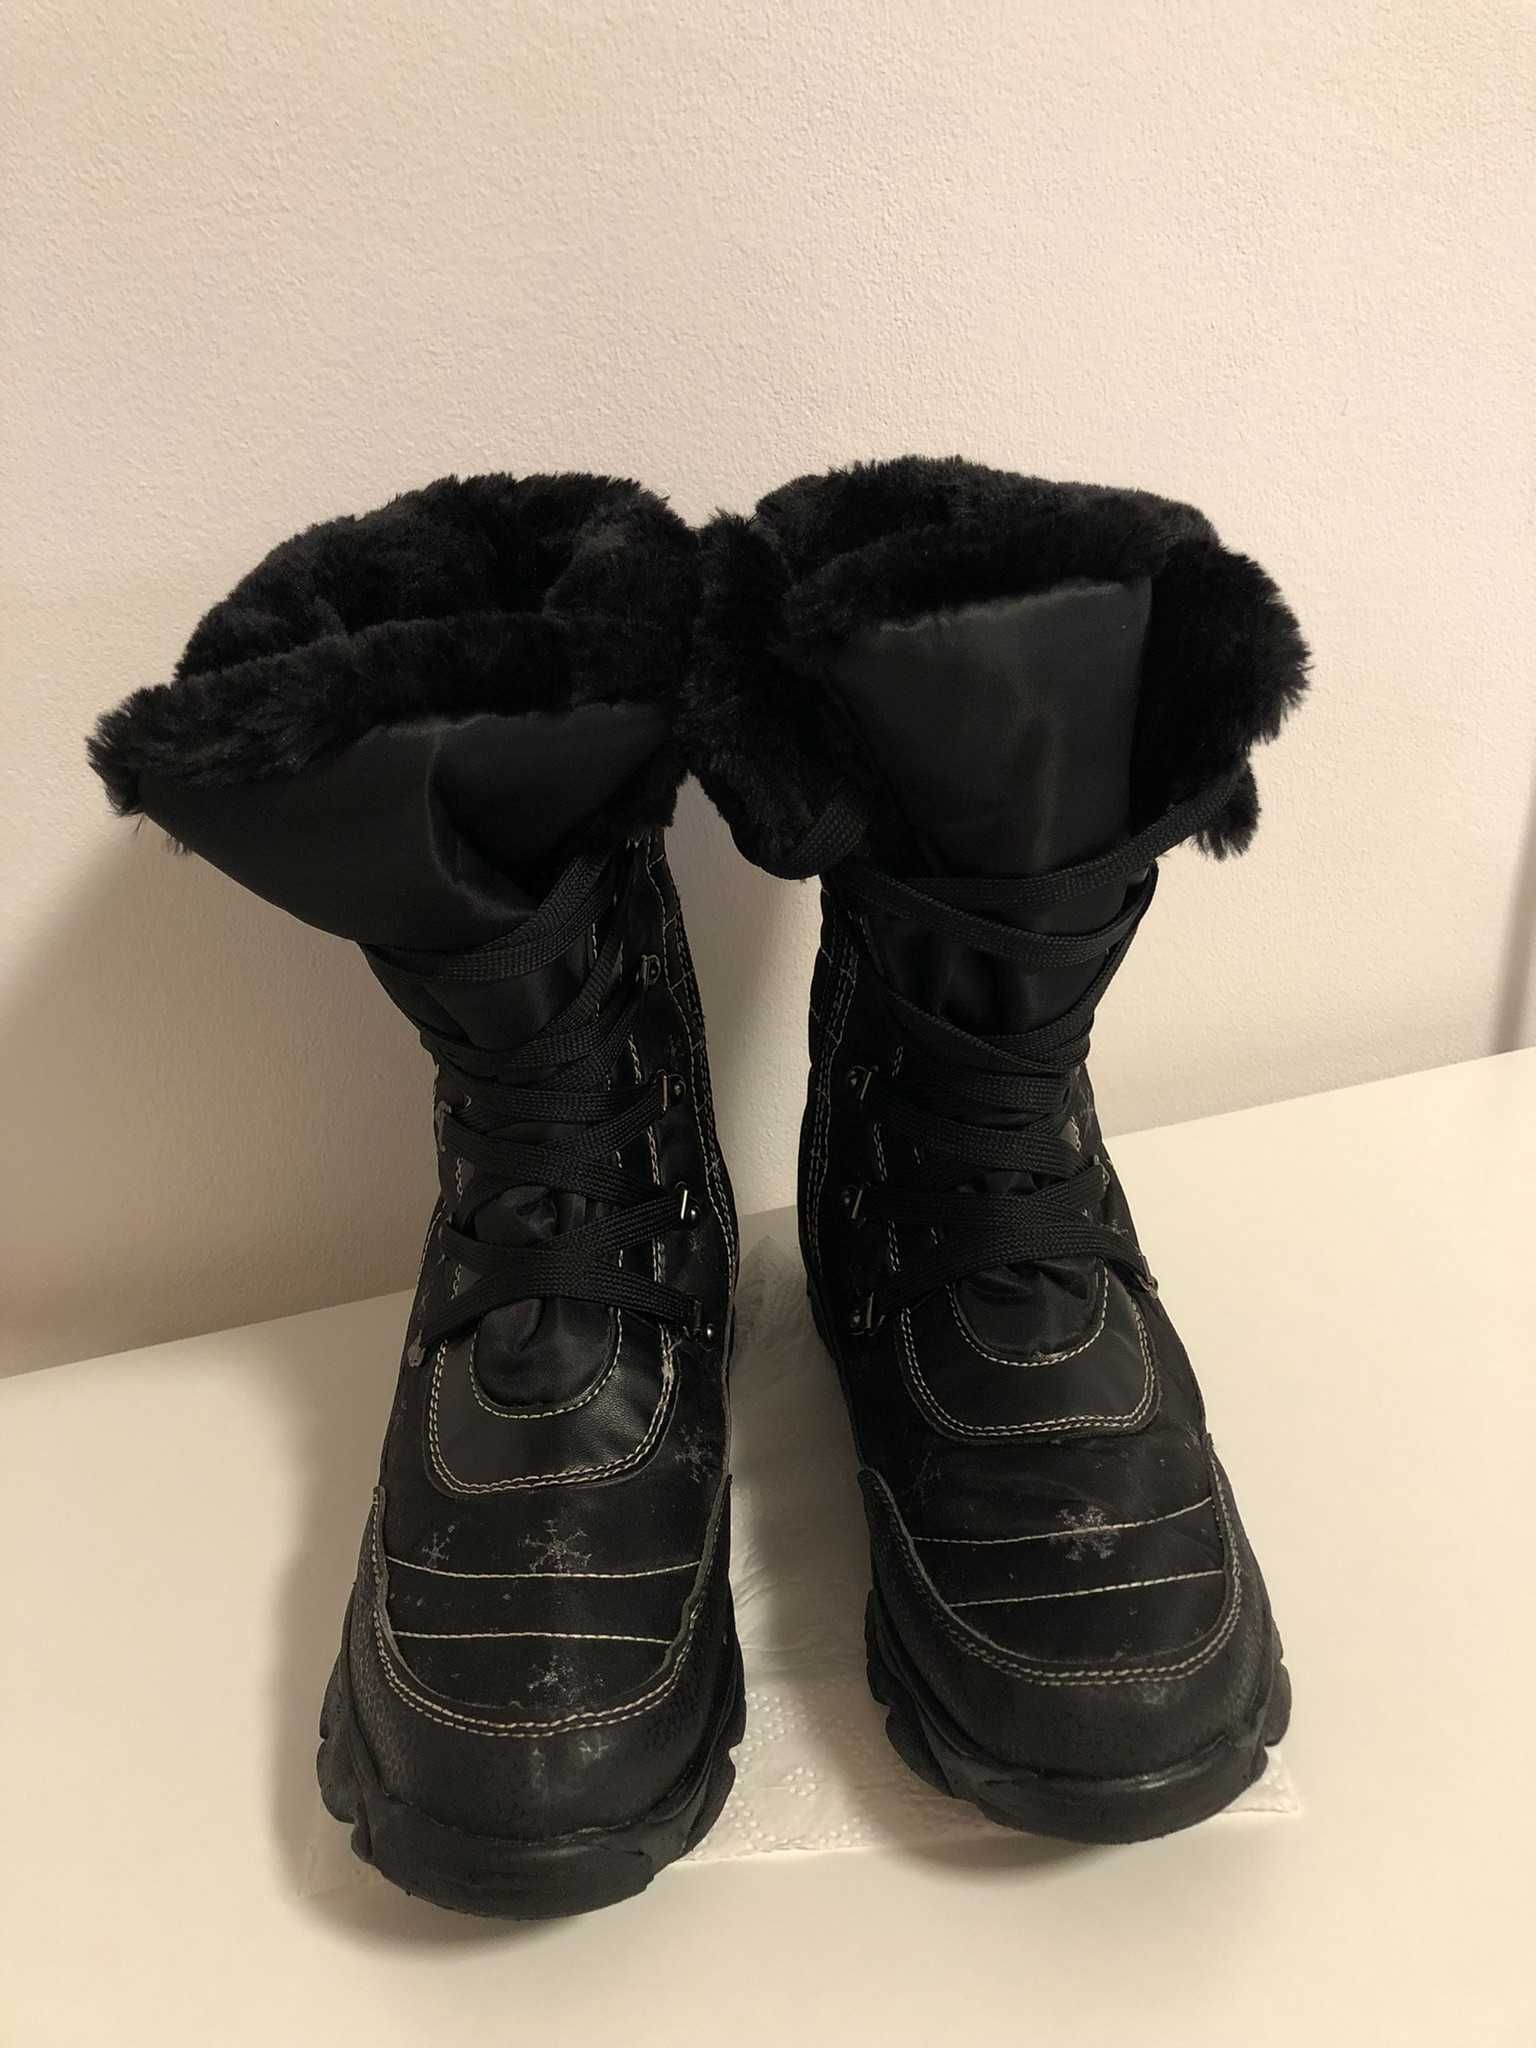 Обувки, зимни ботуши с отопление, размер 37, нови, черни, Slam-tex